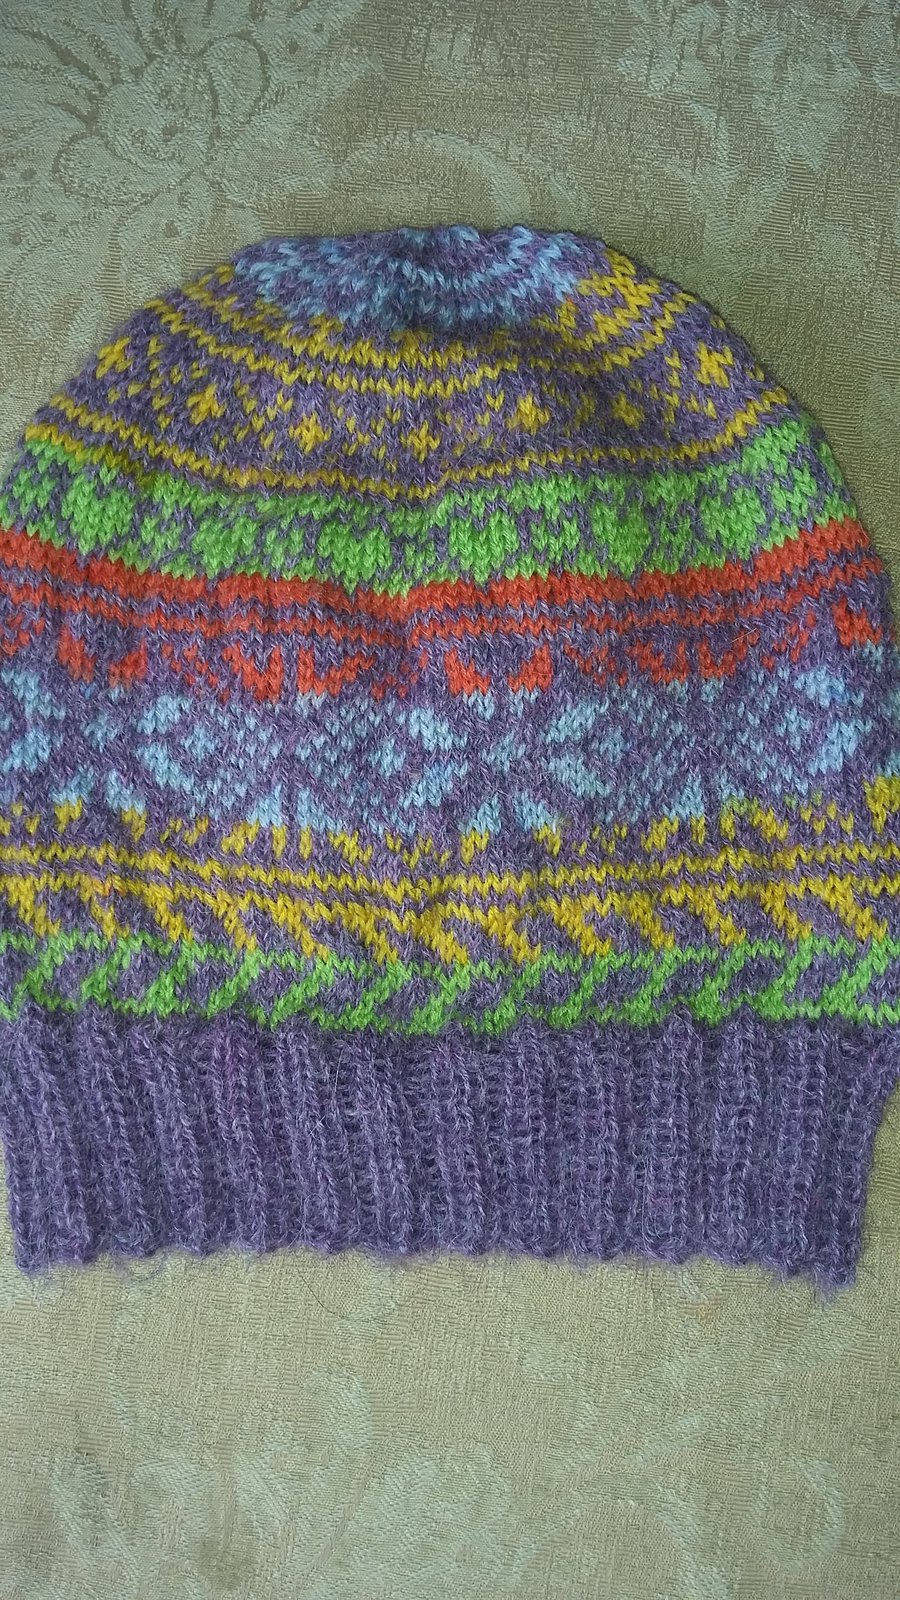 Hand knitted fair isle hat